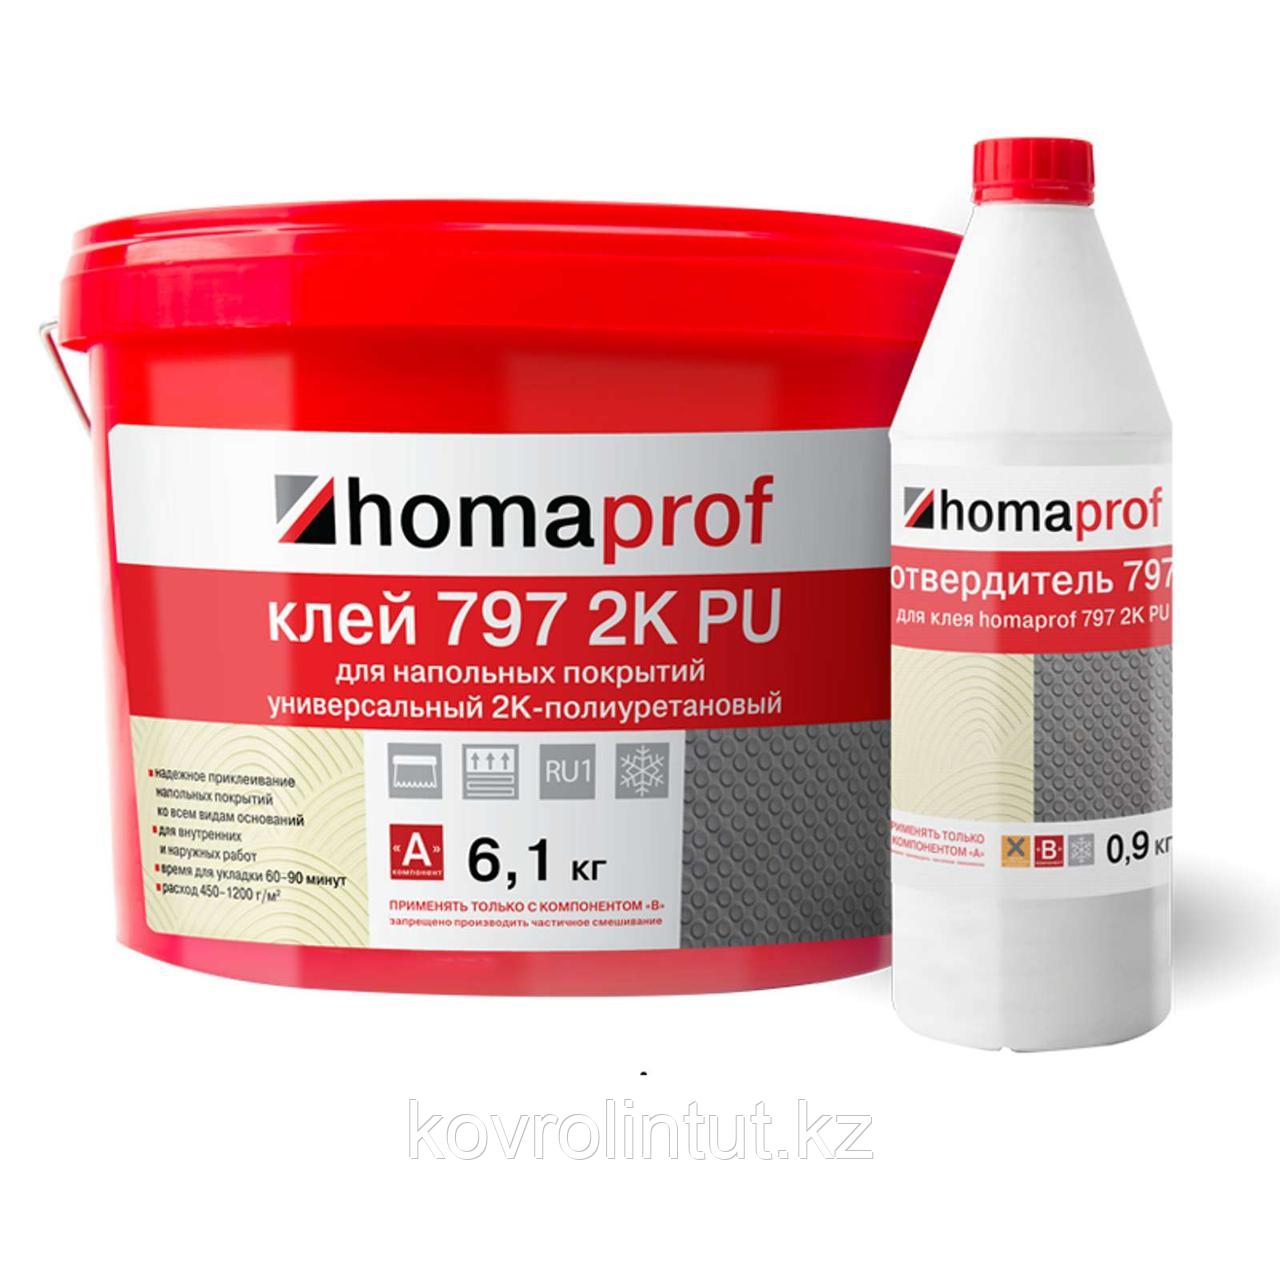 Клей Homaprof 797 K2 PU для резиновых покрытий, 7кг